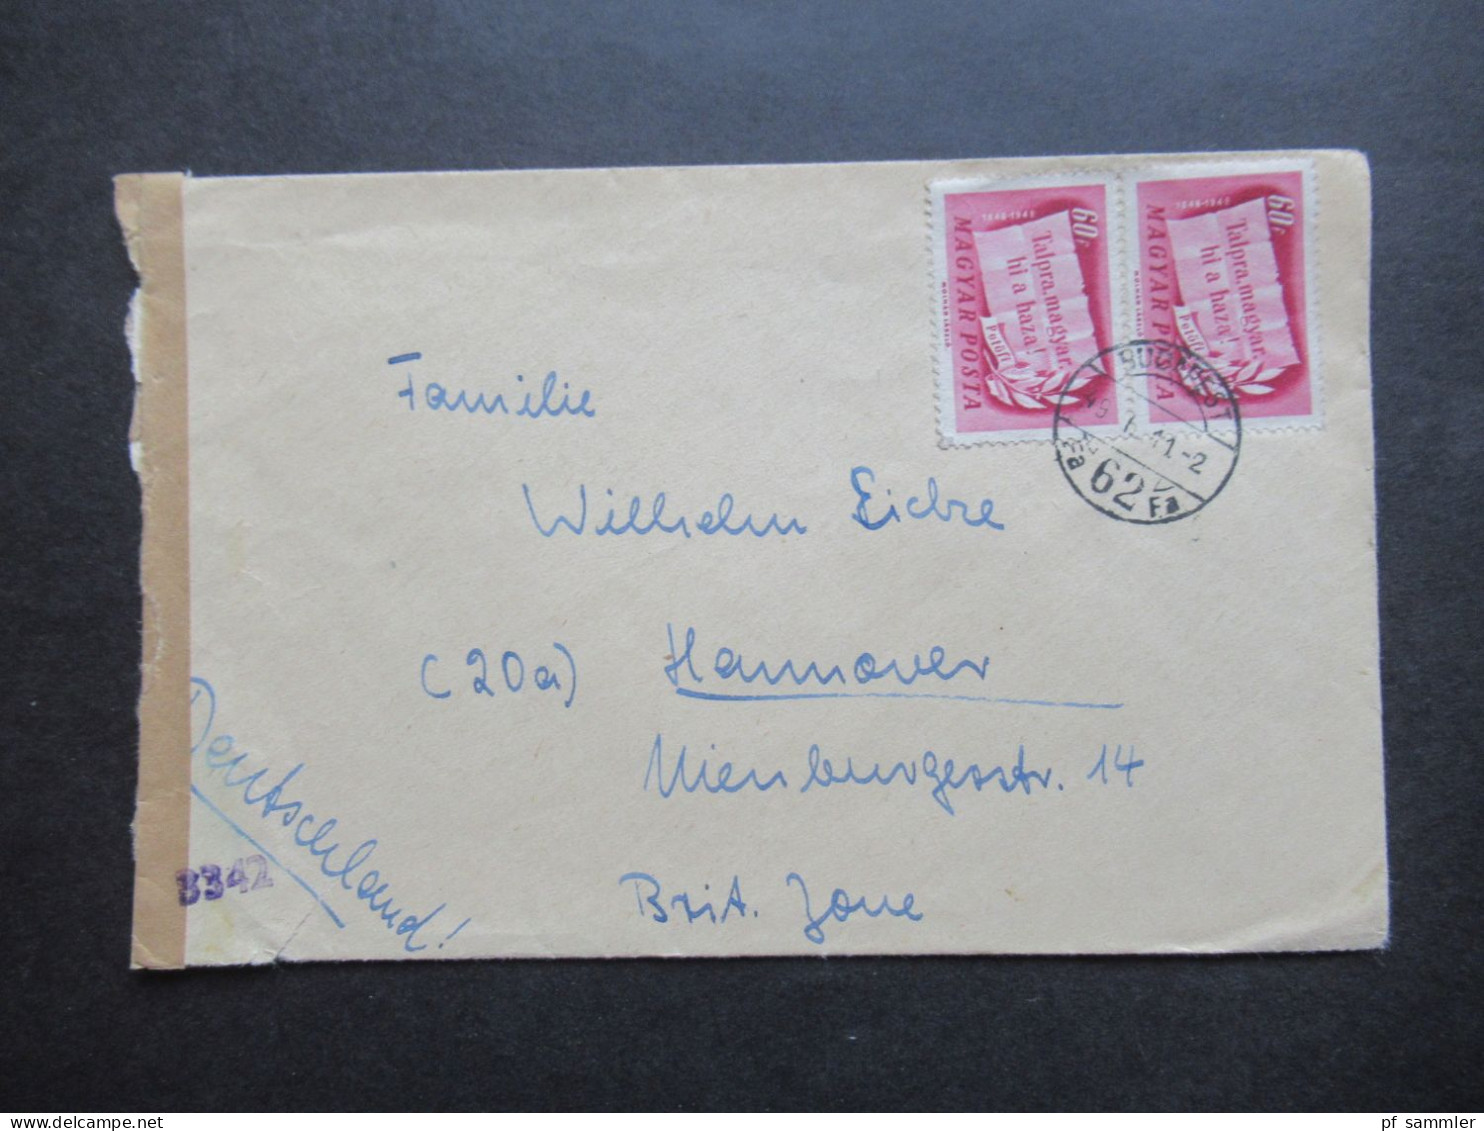 Ungarn 1949 Auslandsbrief / Zensurbeleg Budapest - Hannover Mit Verschlussstreifen Und Zensurstempel 3342 - Briefe U. Dokumente